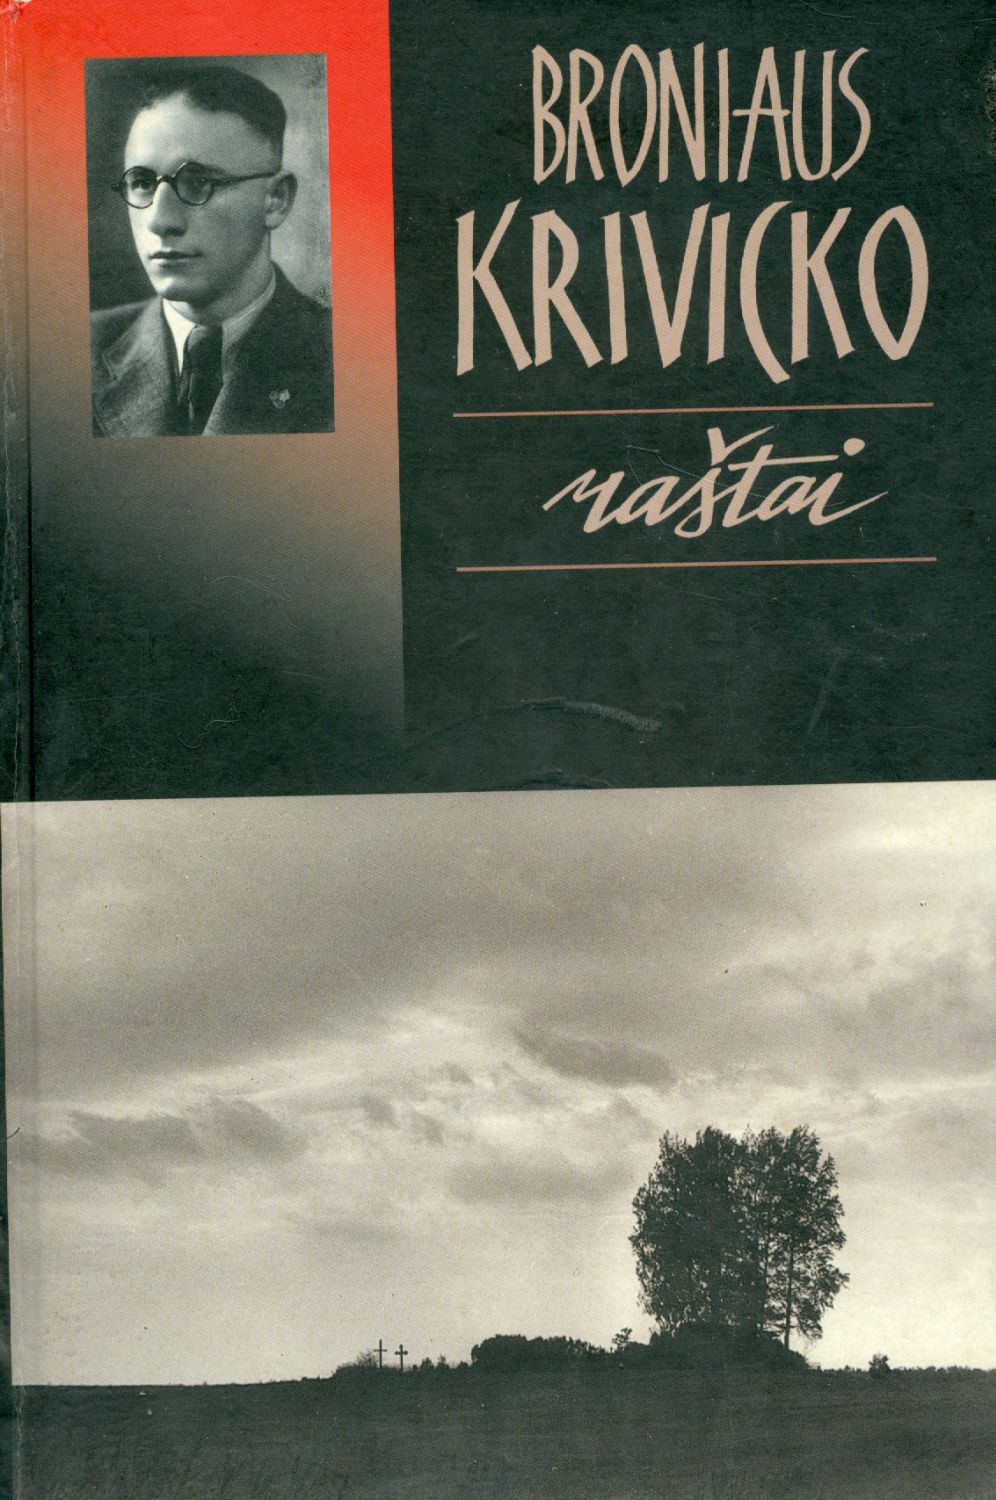 Broniaus Krivicko Raštai knygos viršelis